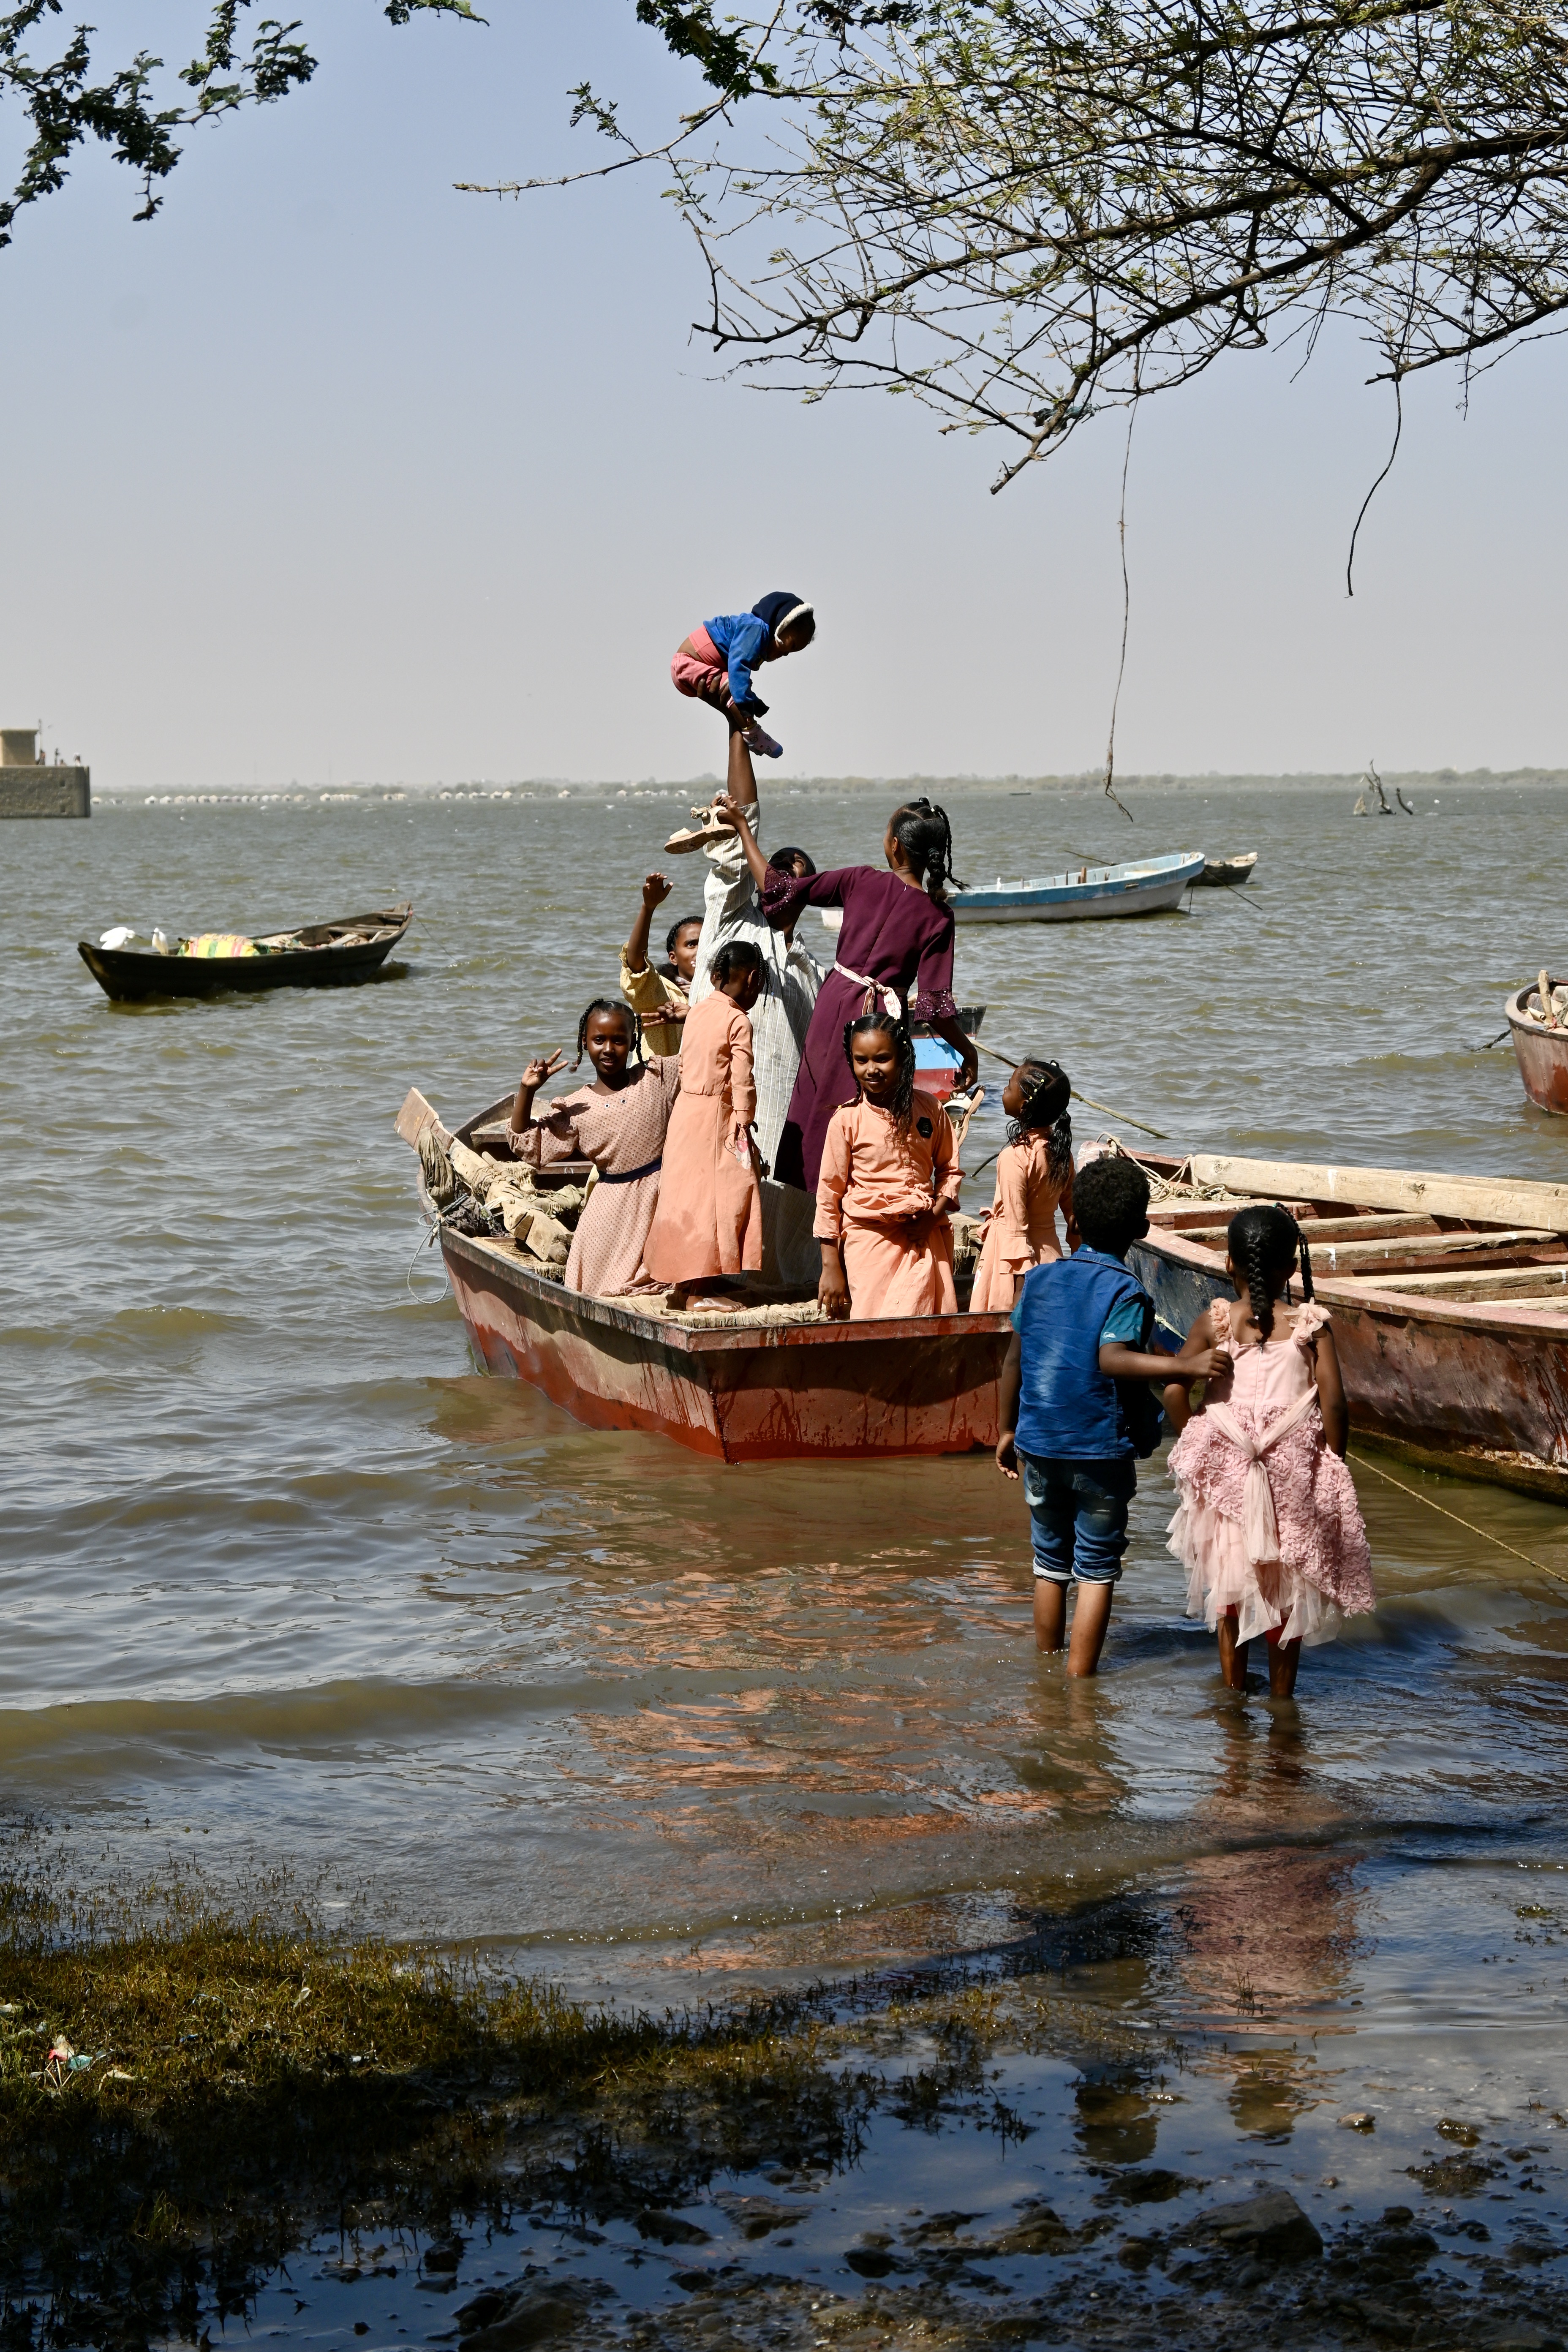 Miejsce, gdzie zostało zrobione zdjęcie: Dżebel Aulia nad Nilem Białym w Sudanie. Autorem zdjęcia jest Maciej Kurcz. Na zdjęciu widać wodę, która może być morzem, jeziorem - a w rzeczywistości jest to rzeka Nil Biały. Na zdjęciu nie widać drugiego brzegu, woda sięga po widnokrąg. Woda jest szaro-niebieska, z elementami żółtymi przy brzegu. Jest spokojna przy brzegu można zobaczyć lekki zarys fal. Na wodzie stoi płaskodenna łódka, w niej zasiada rodzina, która prawdopodobnie wyrusza na wycieczkę. W łódce siedzi już m.in 6 osób a podchodzi jeszcze 2 dzieci. Wszystkie osoby, są ubrane w kolorowe stroje. Kobiety maja sukienki w odcieniach różu, beżu i kolorze herbacianym. Jedno z dzieci ma granatową bluzę, a jedna osoba bordową. Obok łódki, która wyrusza na wycieczkę stoi druga pusta. W oddali na wodzie widać jeszcze 2 inne zacumowane puste łodzie. Niebo jest niebieskie, a całe zdjęcie robi wrażenia bardzo optymistyczne i wesołe.